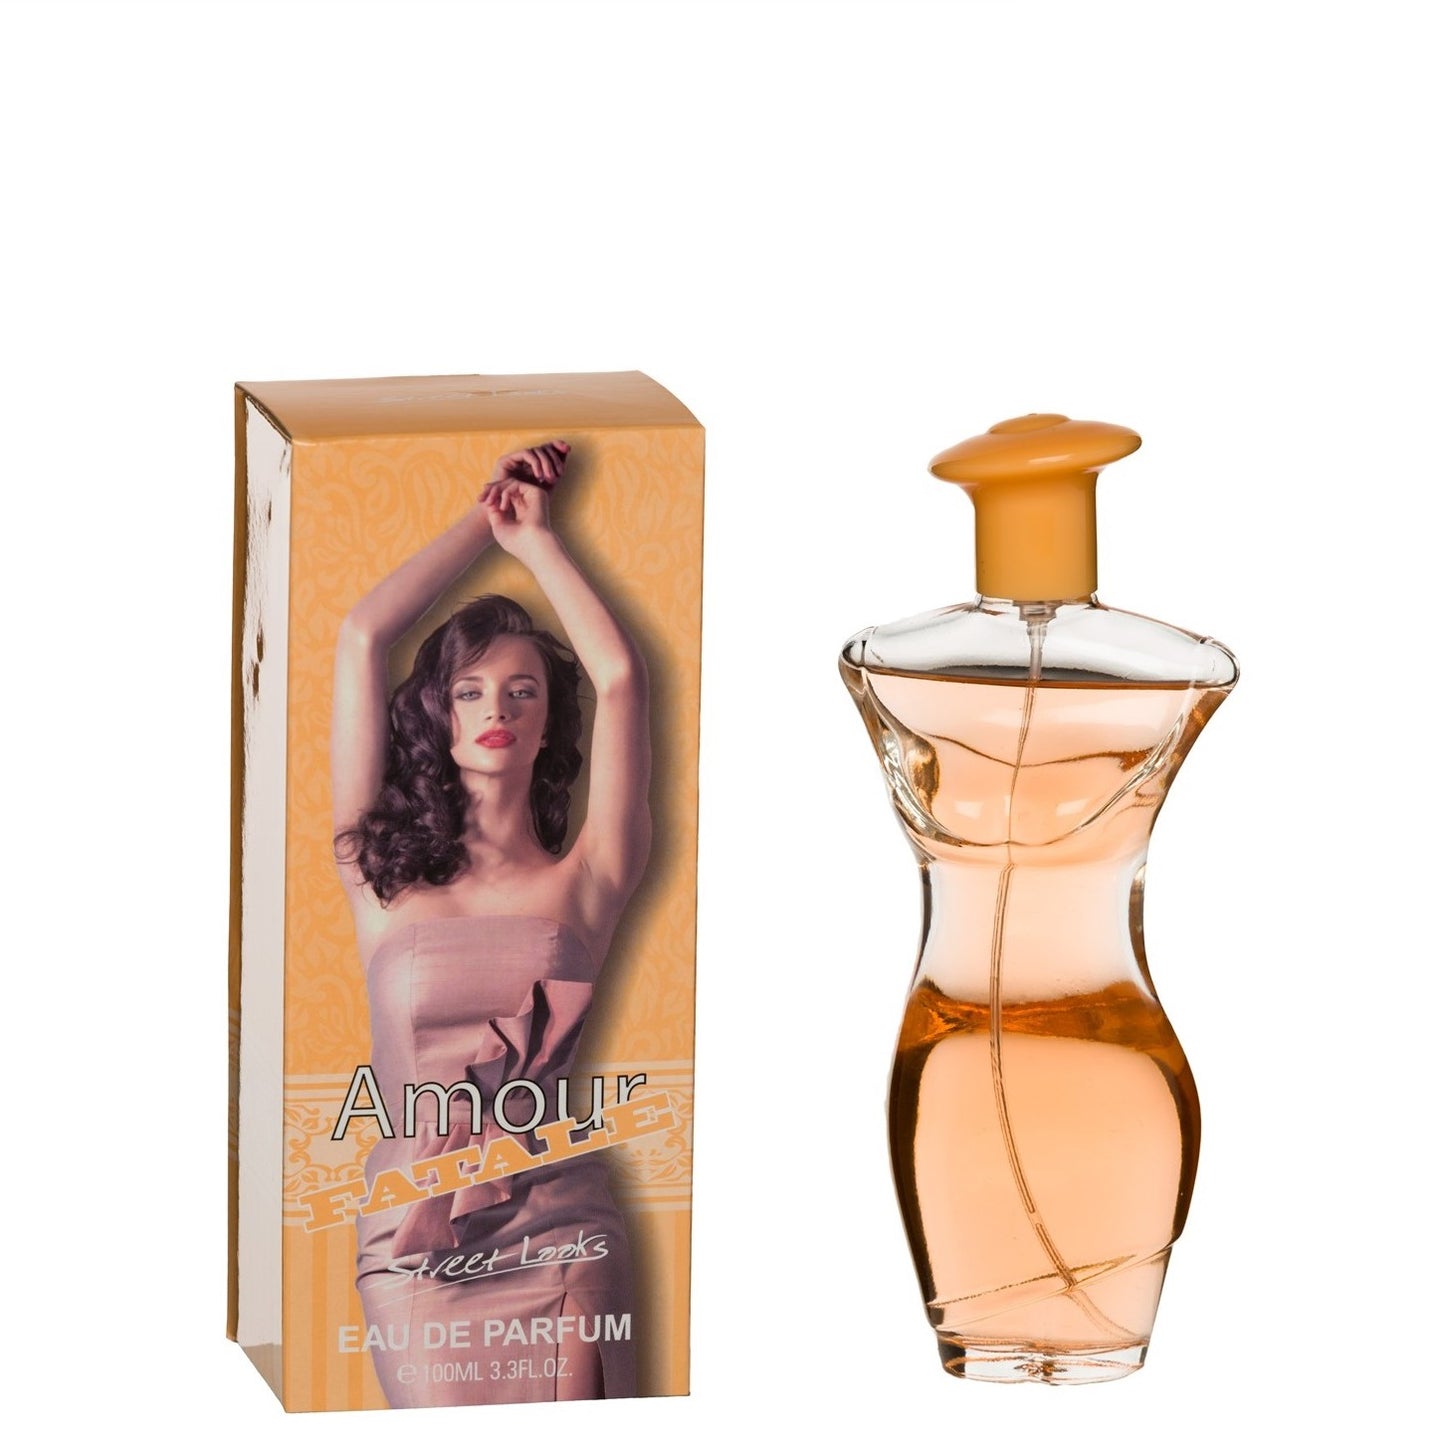 100 ml de Eau de Perfume "AMOUR FATALE" Fragrância Floral Oriental para Mulheres, com alto teor de óleo perfumado 2%